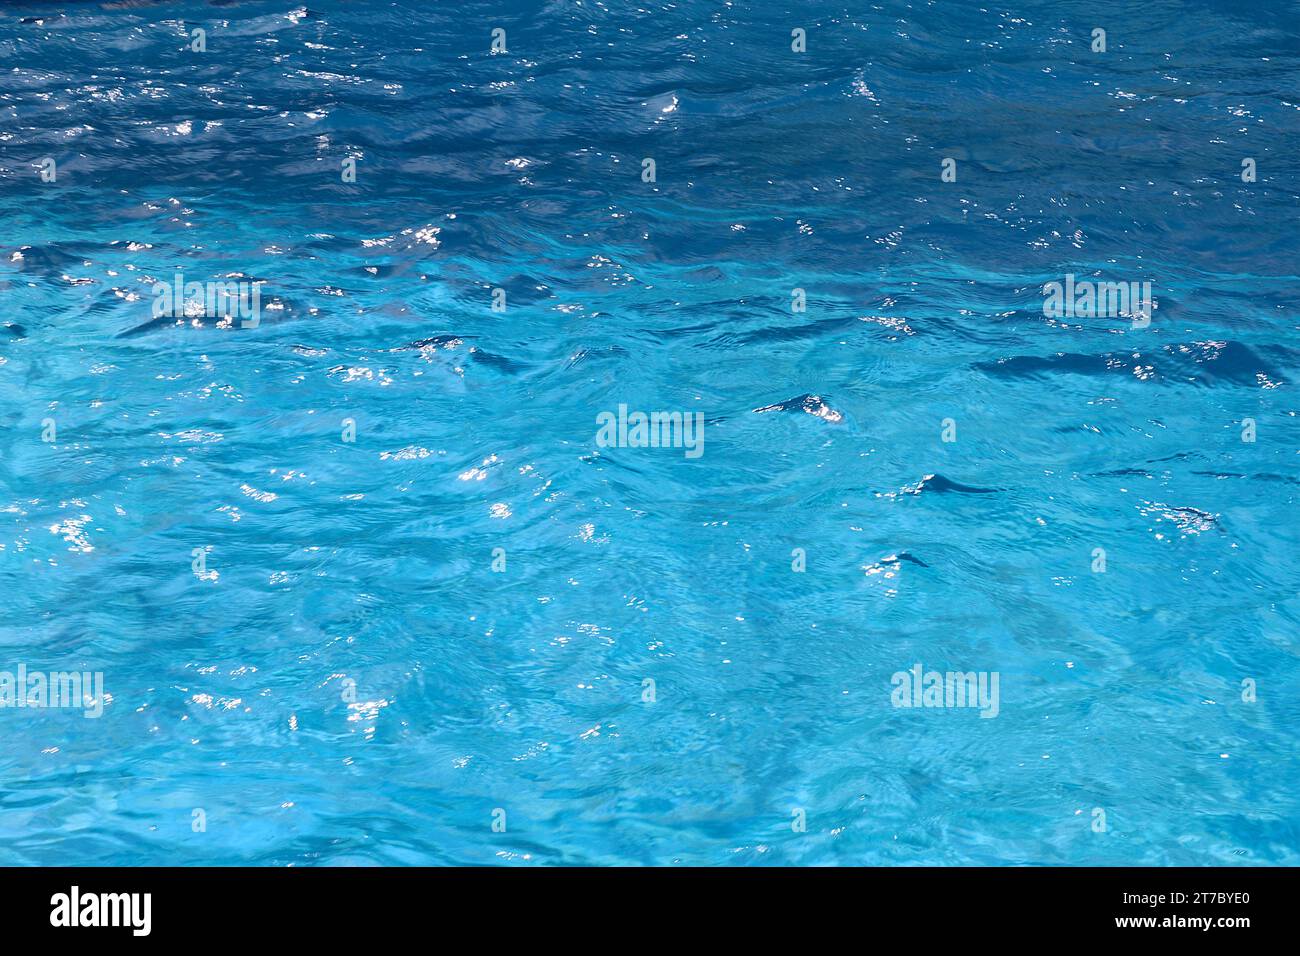 Das einladende azurblaue Wasser des Aquarius Pools befindet sich östlich auf Deck 9, Lido Deck des P&O Kreuzfahrtschiffes Arcadia im Mittelmeer Richtung Malta. Stockfoto